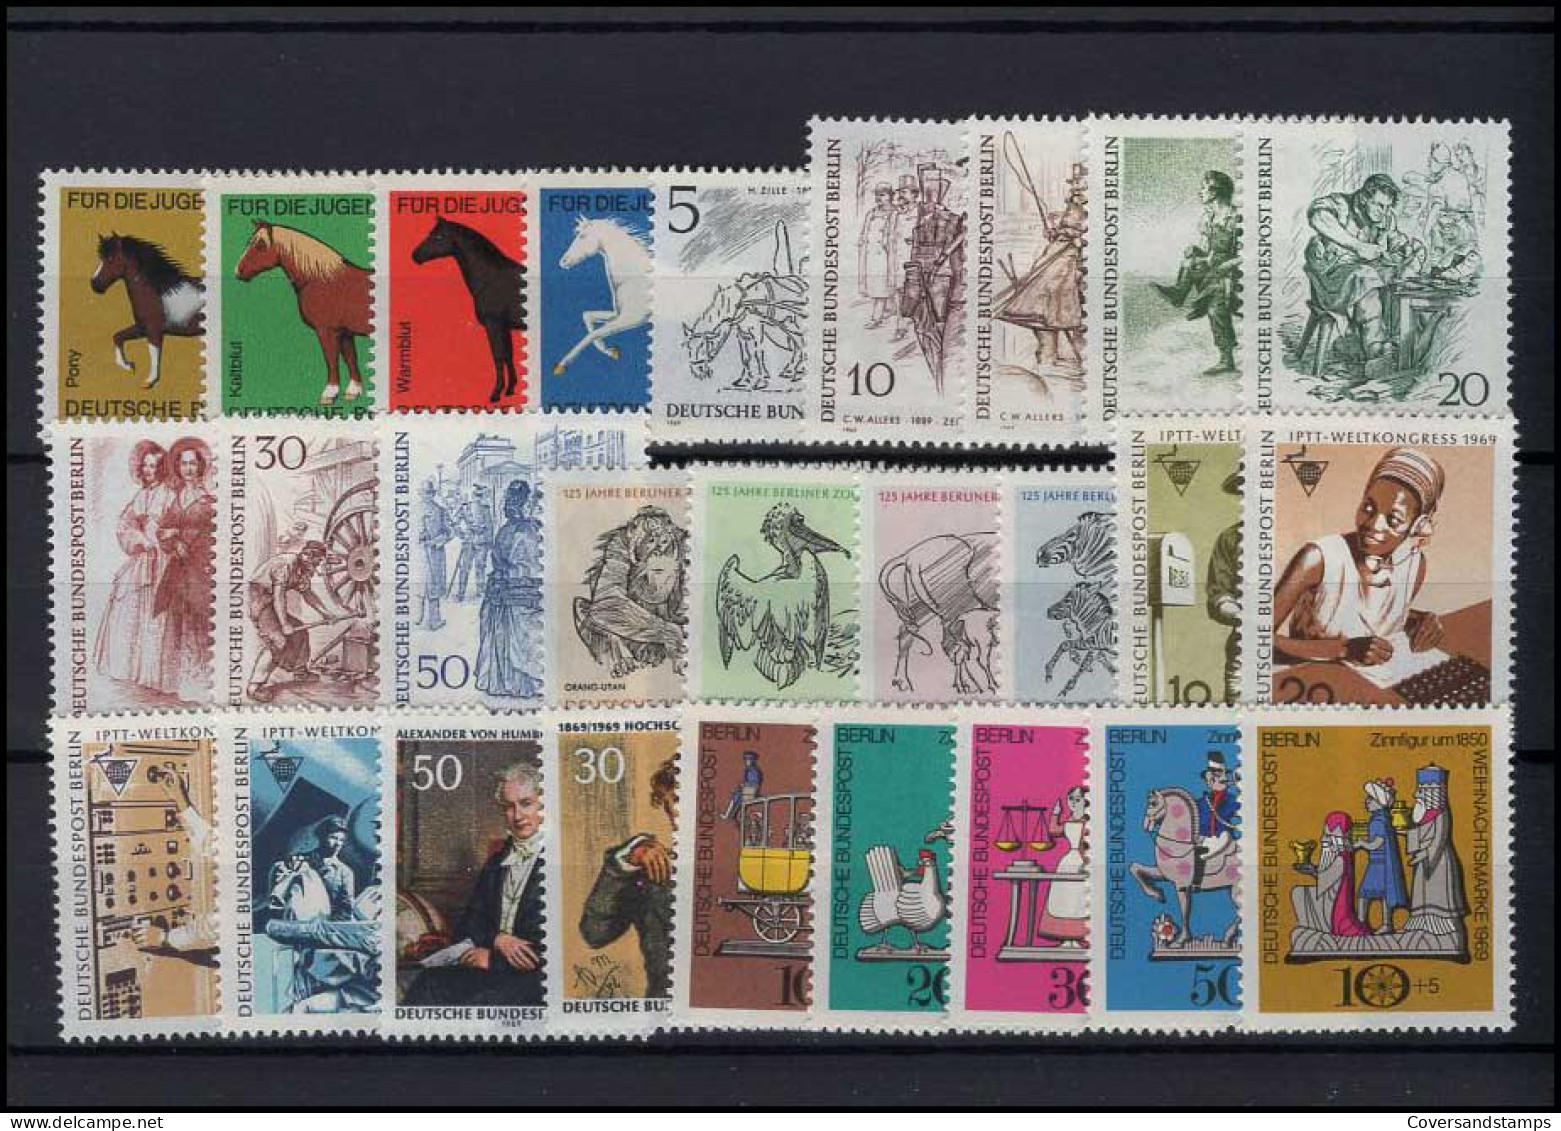   Bundespost Berlin - Volledig Jaar / Jahrgang 1969  MNH - Unused Stamps